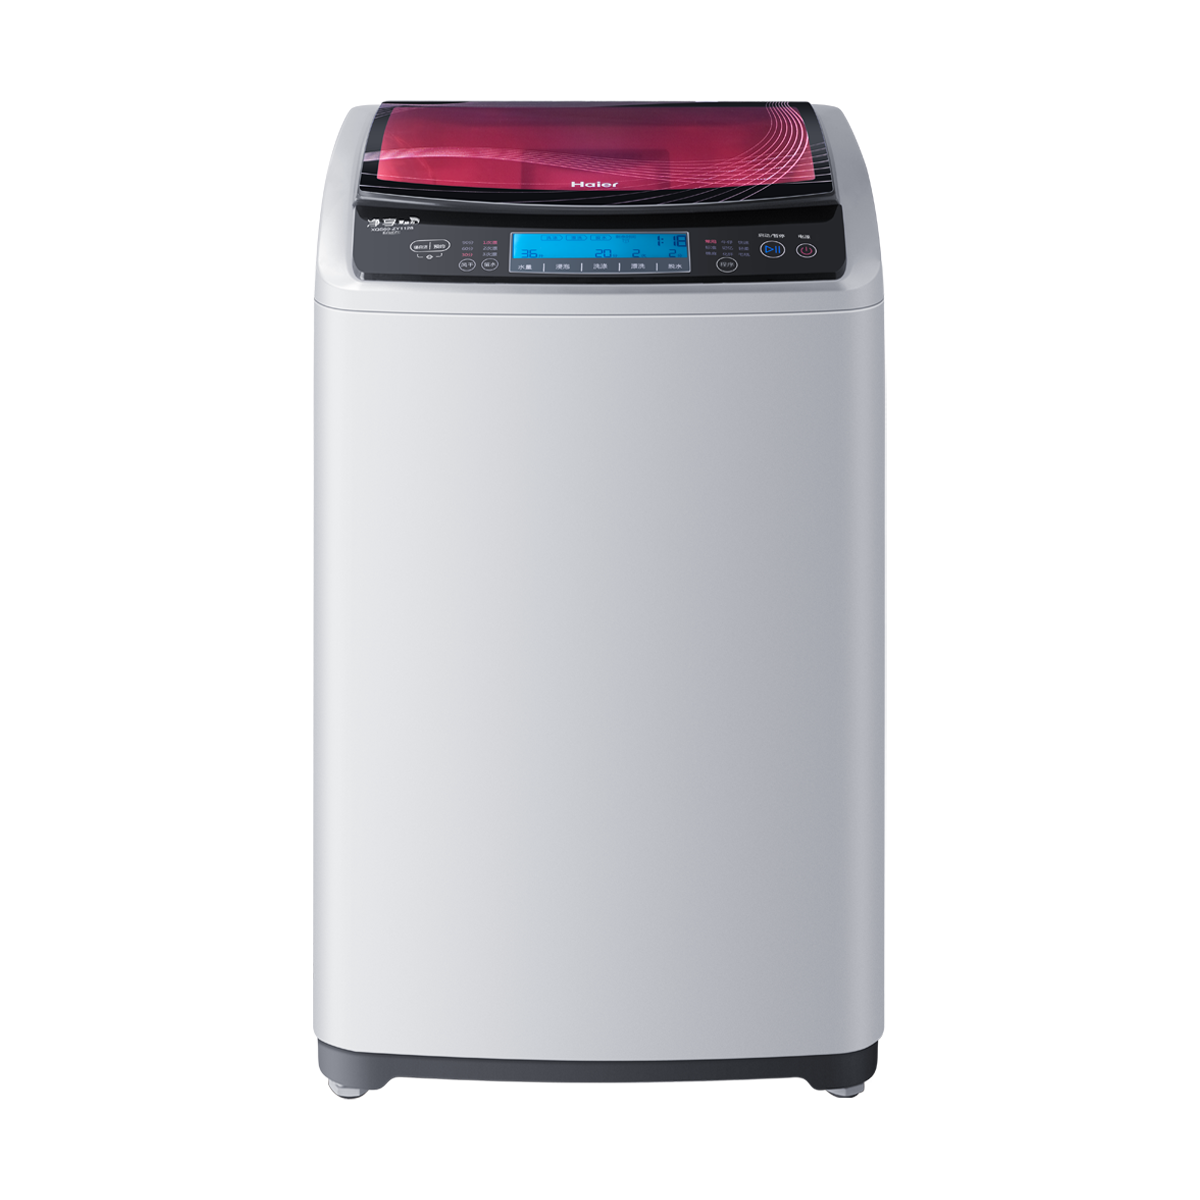 海尔Haier洗衣机 XQS60-ZY1128 说明书